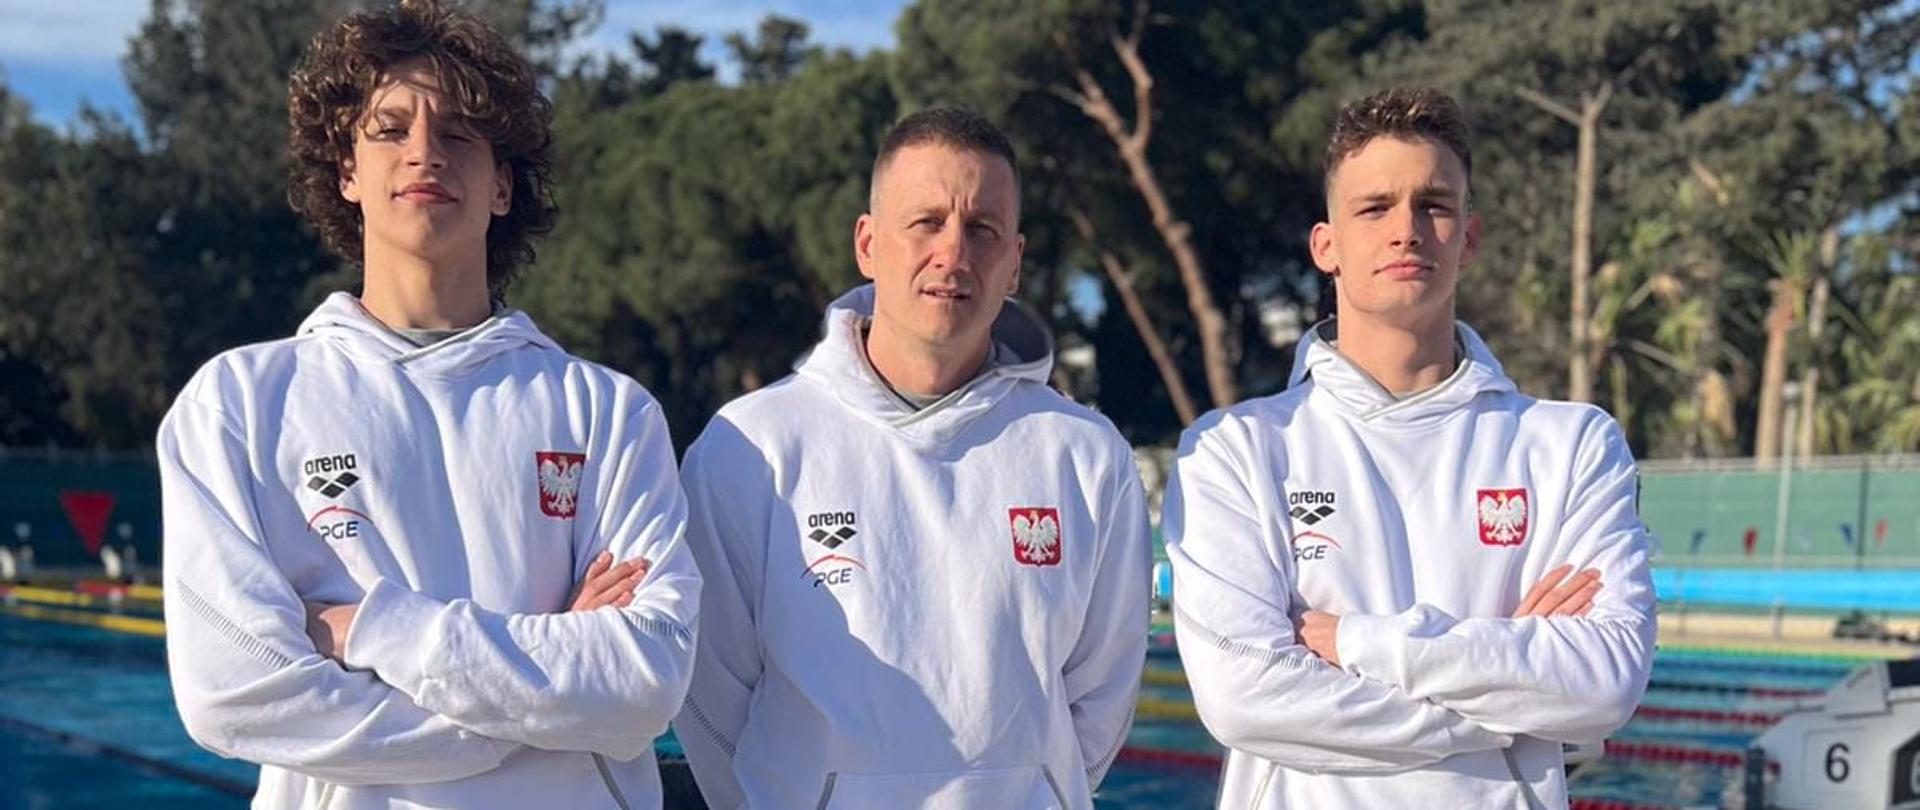 Polacy najlepsi w Limassol - wśród medalistów uczniowie SMS Ostrowiec